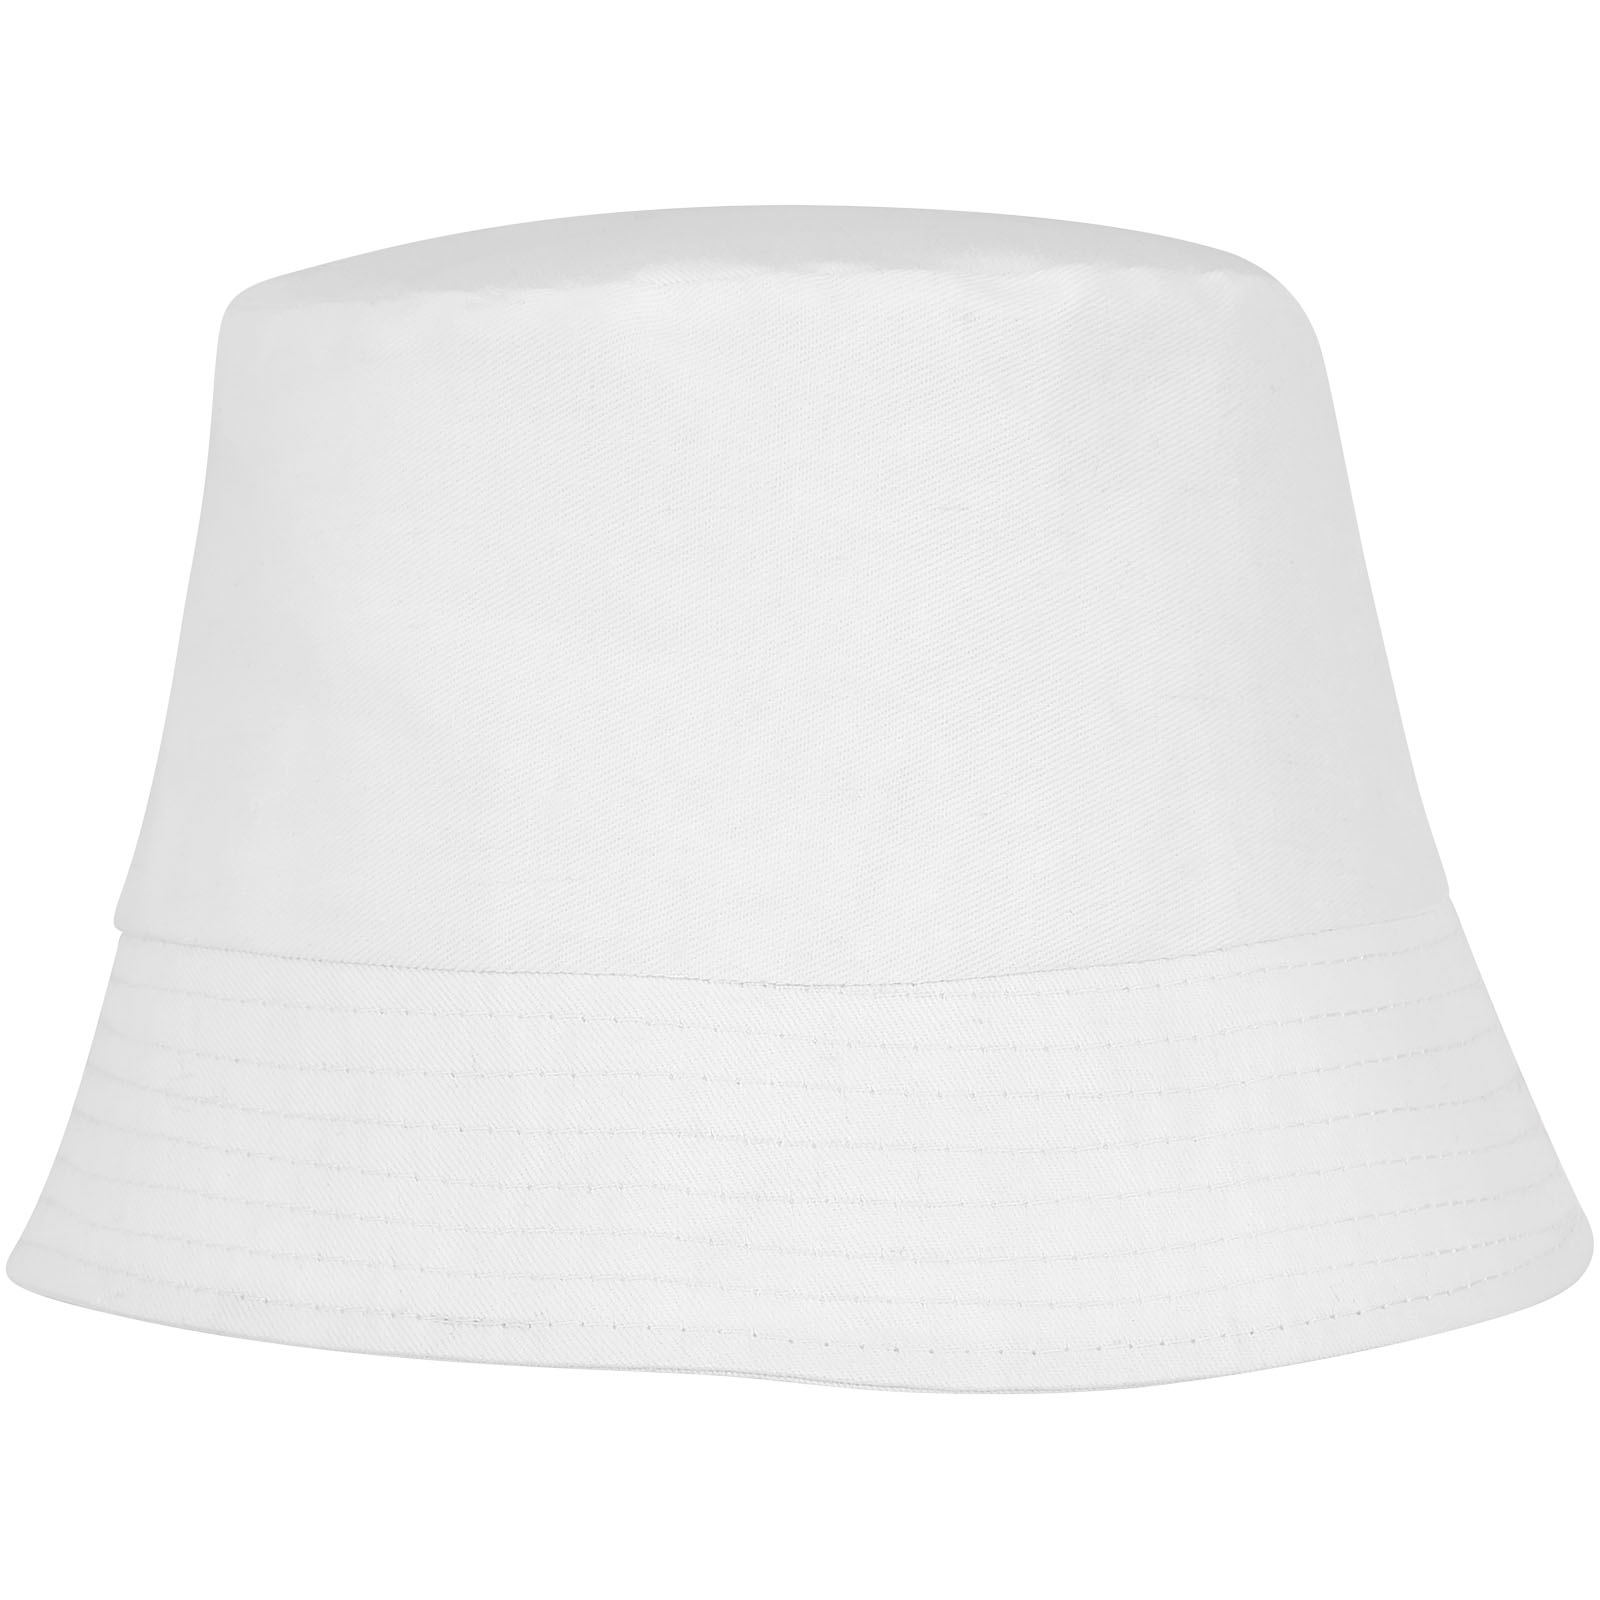 Caps & Hats - Solaris sun hat